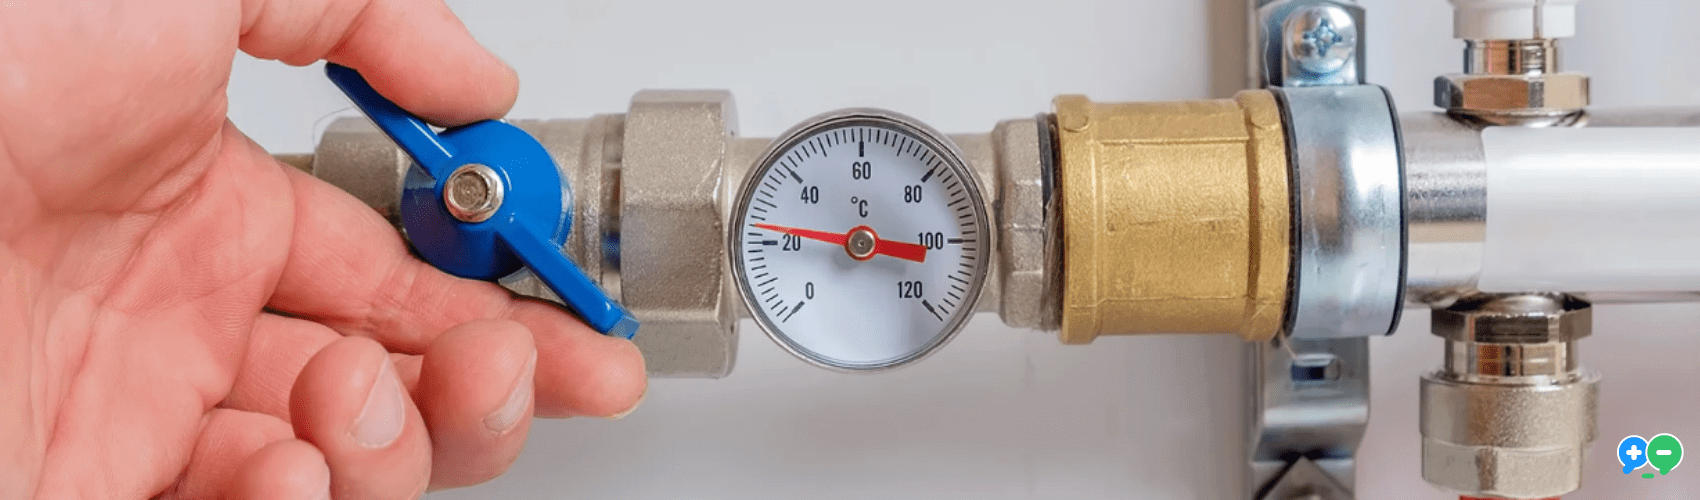 Limiteur de température pour chauffe-eau, installation et fonction